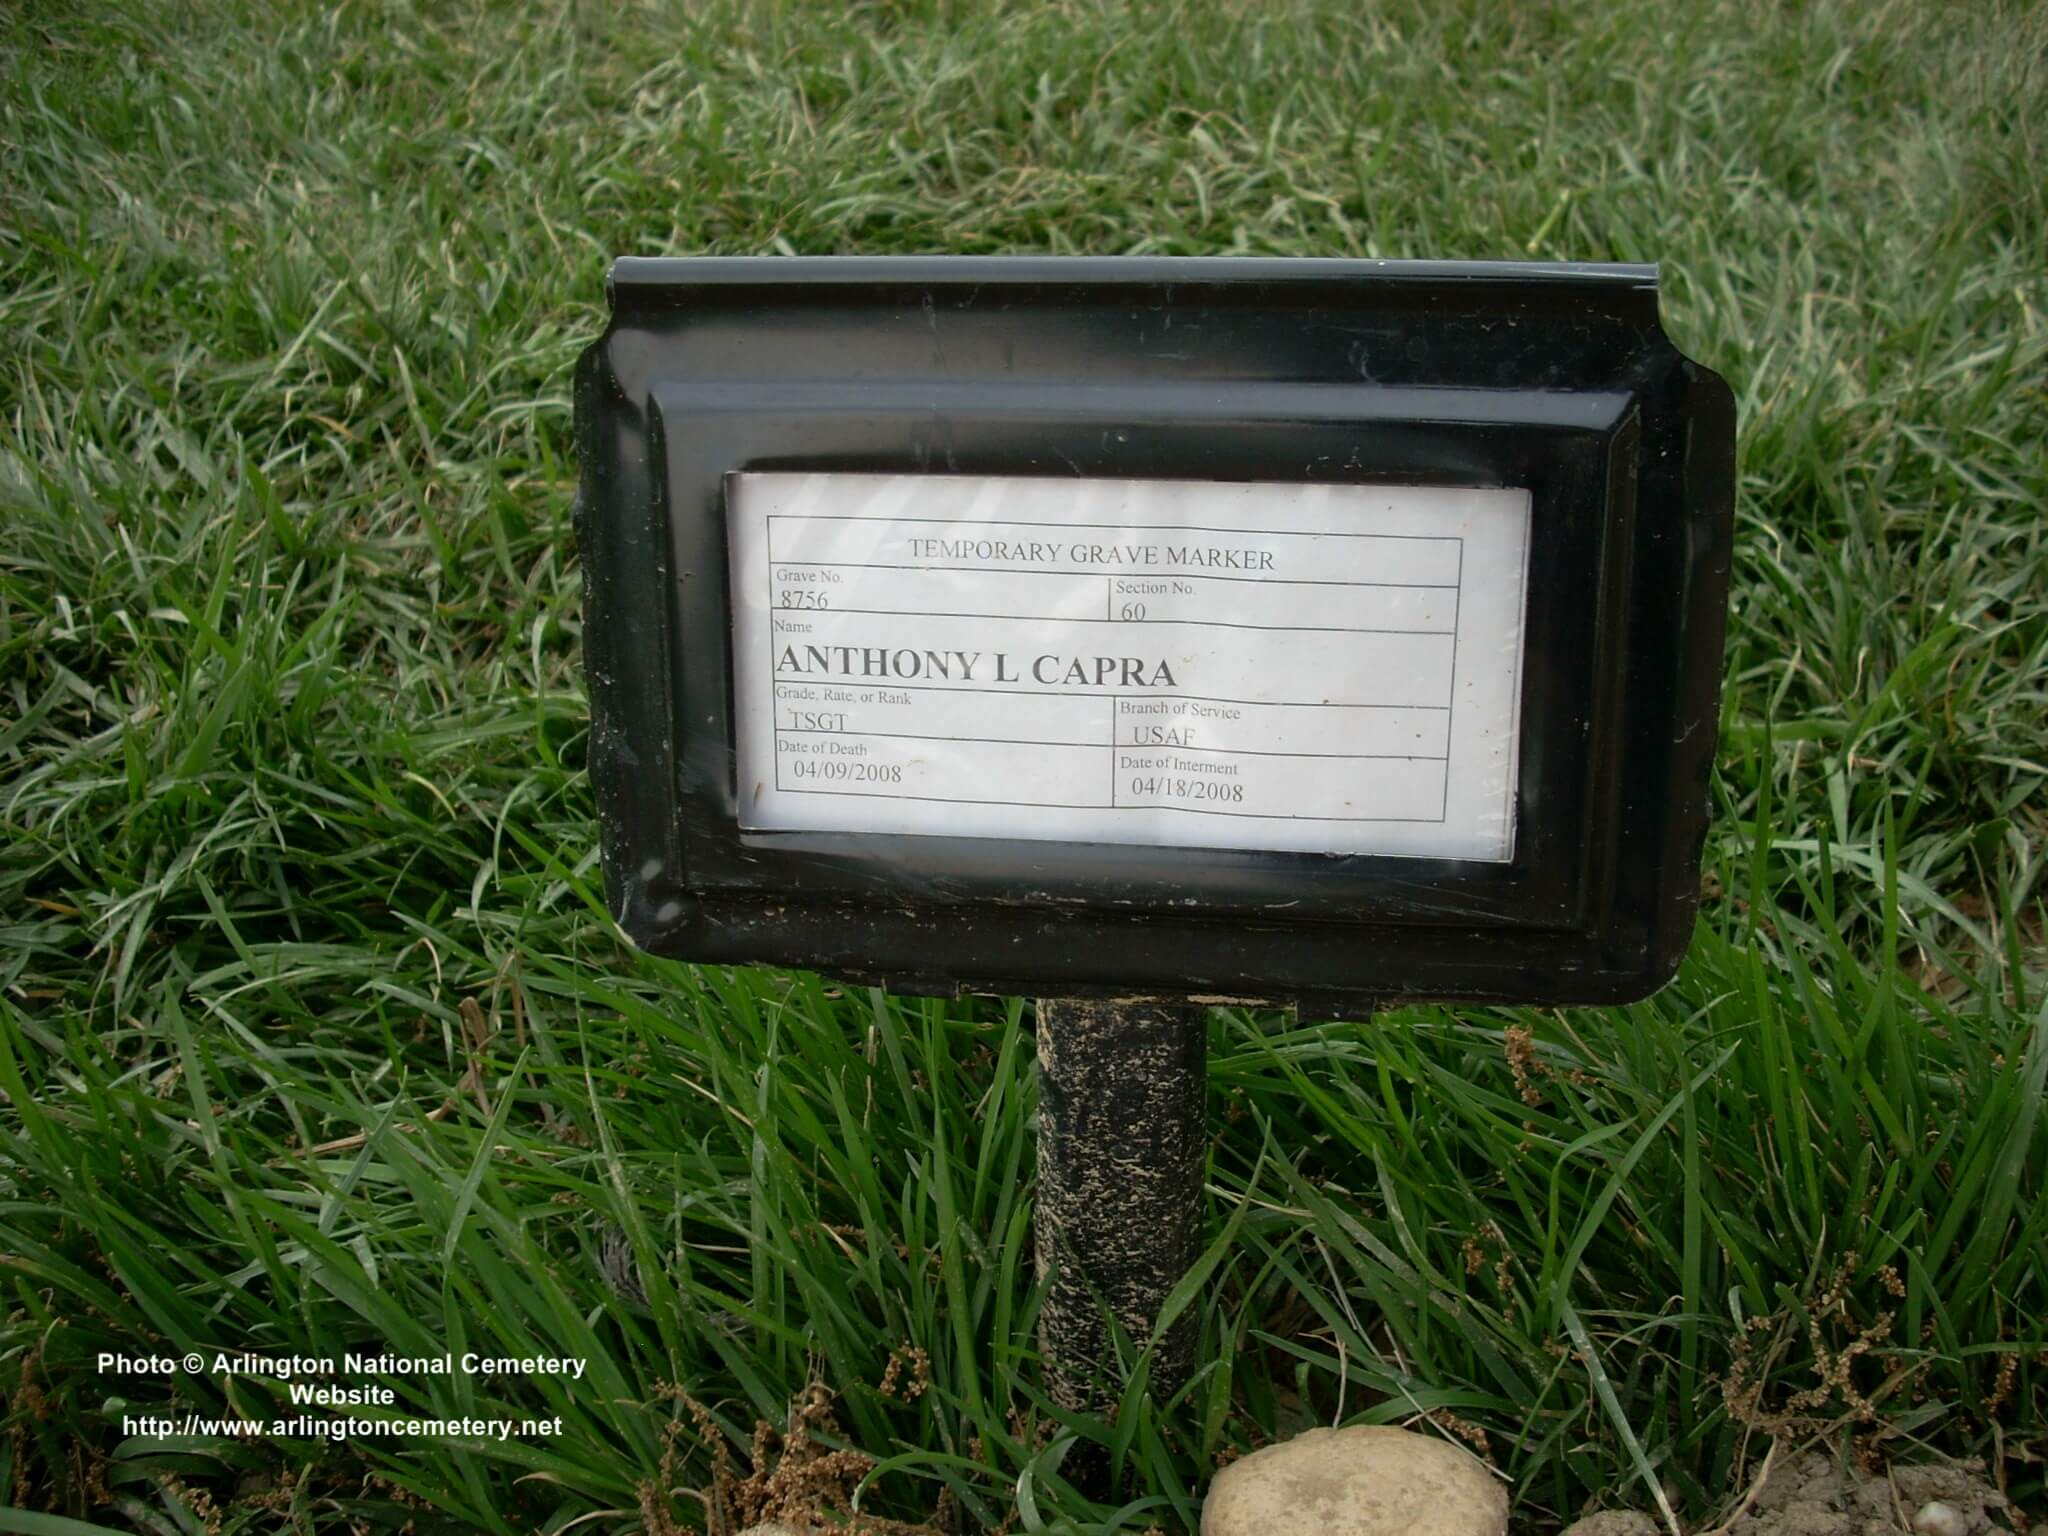 alcapra-gravesite-photo-may-2008-001